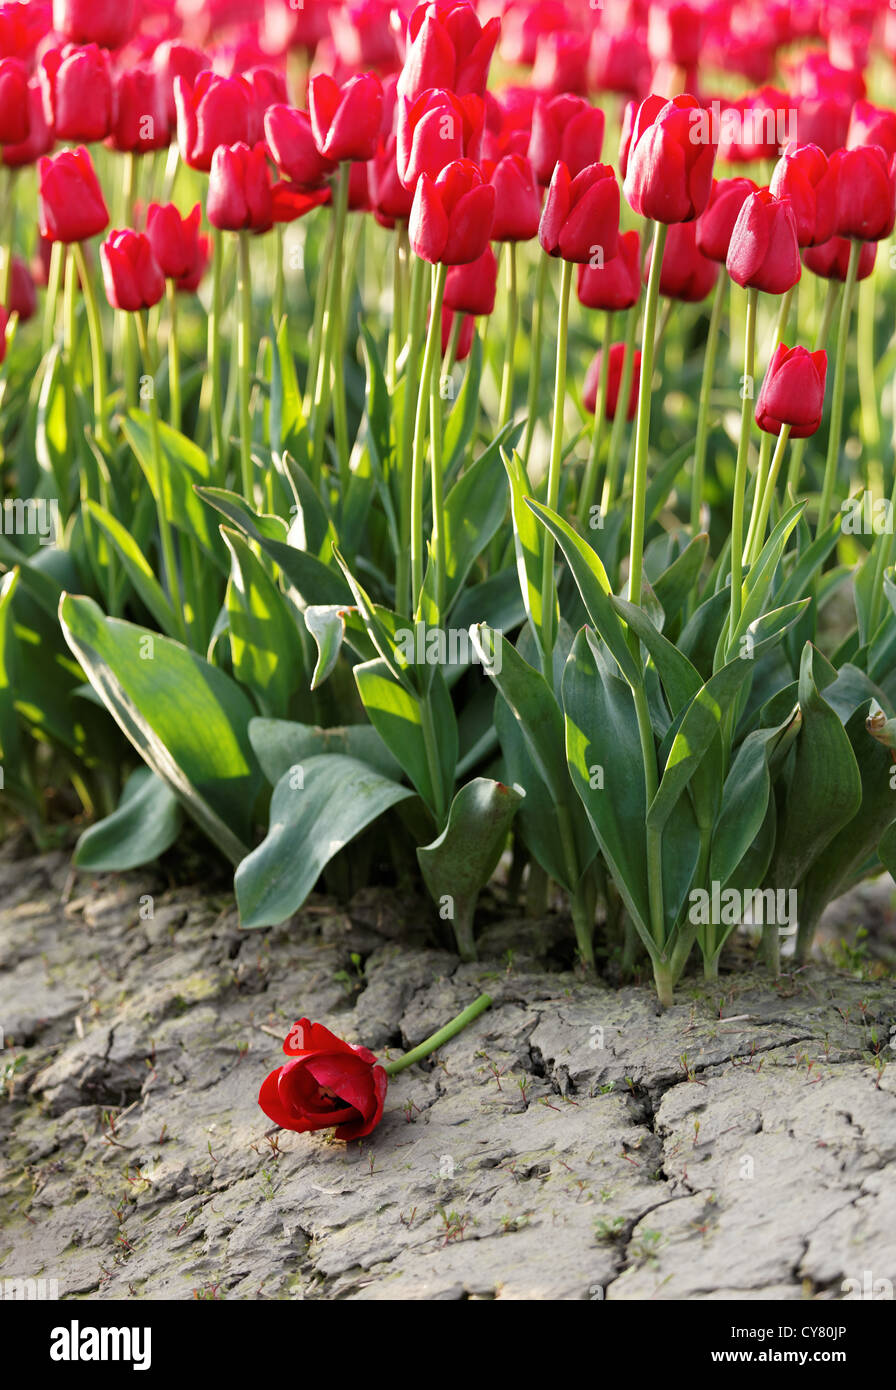 Fallen red tulip, Skagit Valley, Mount Vernon, Washington Stock Photo